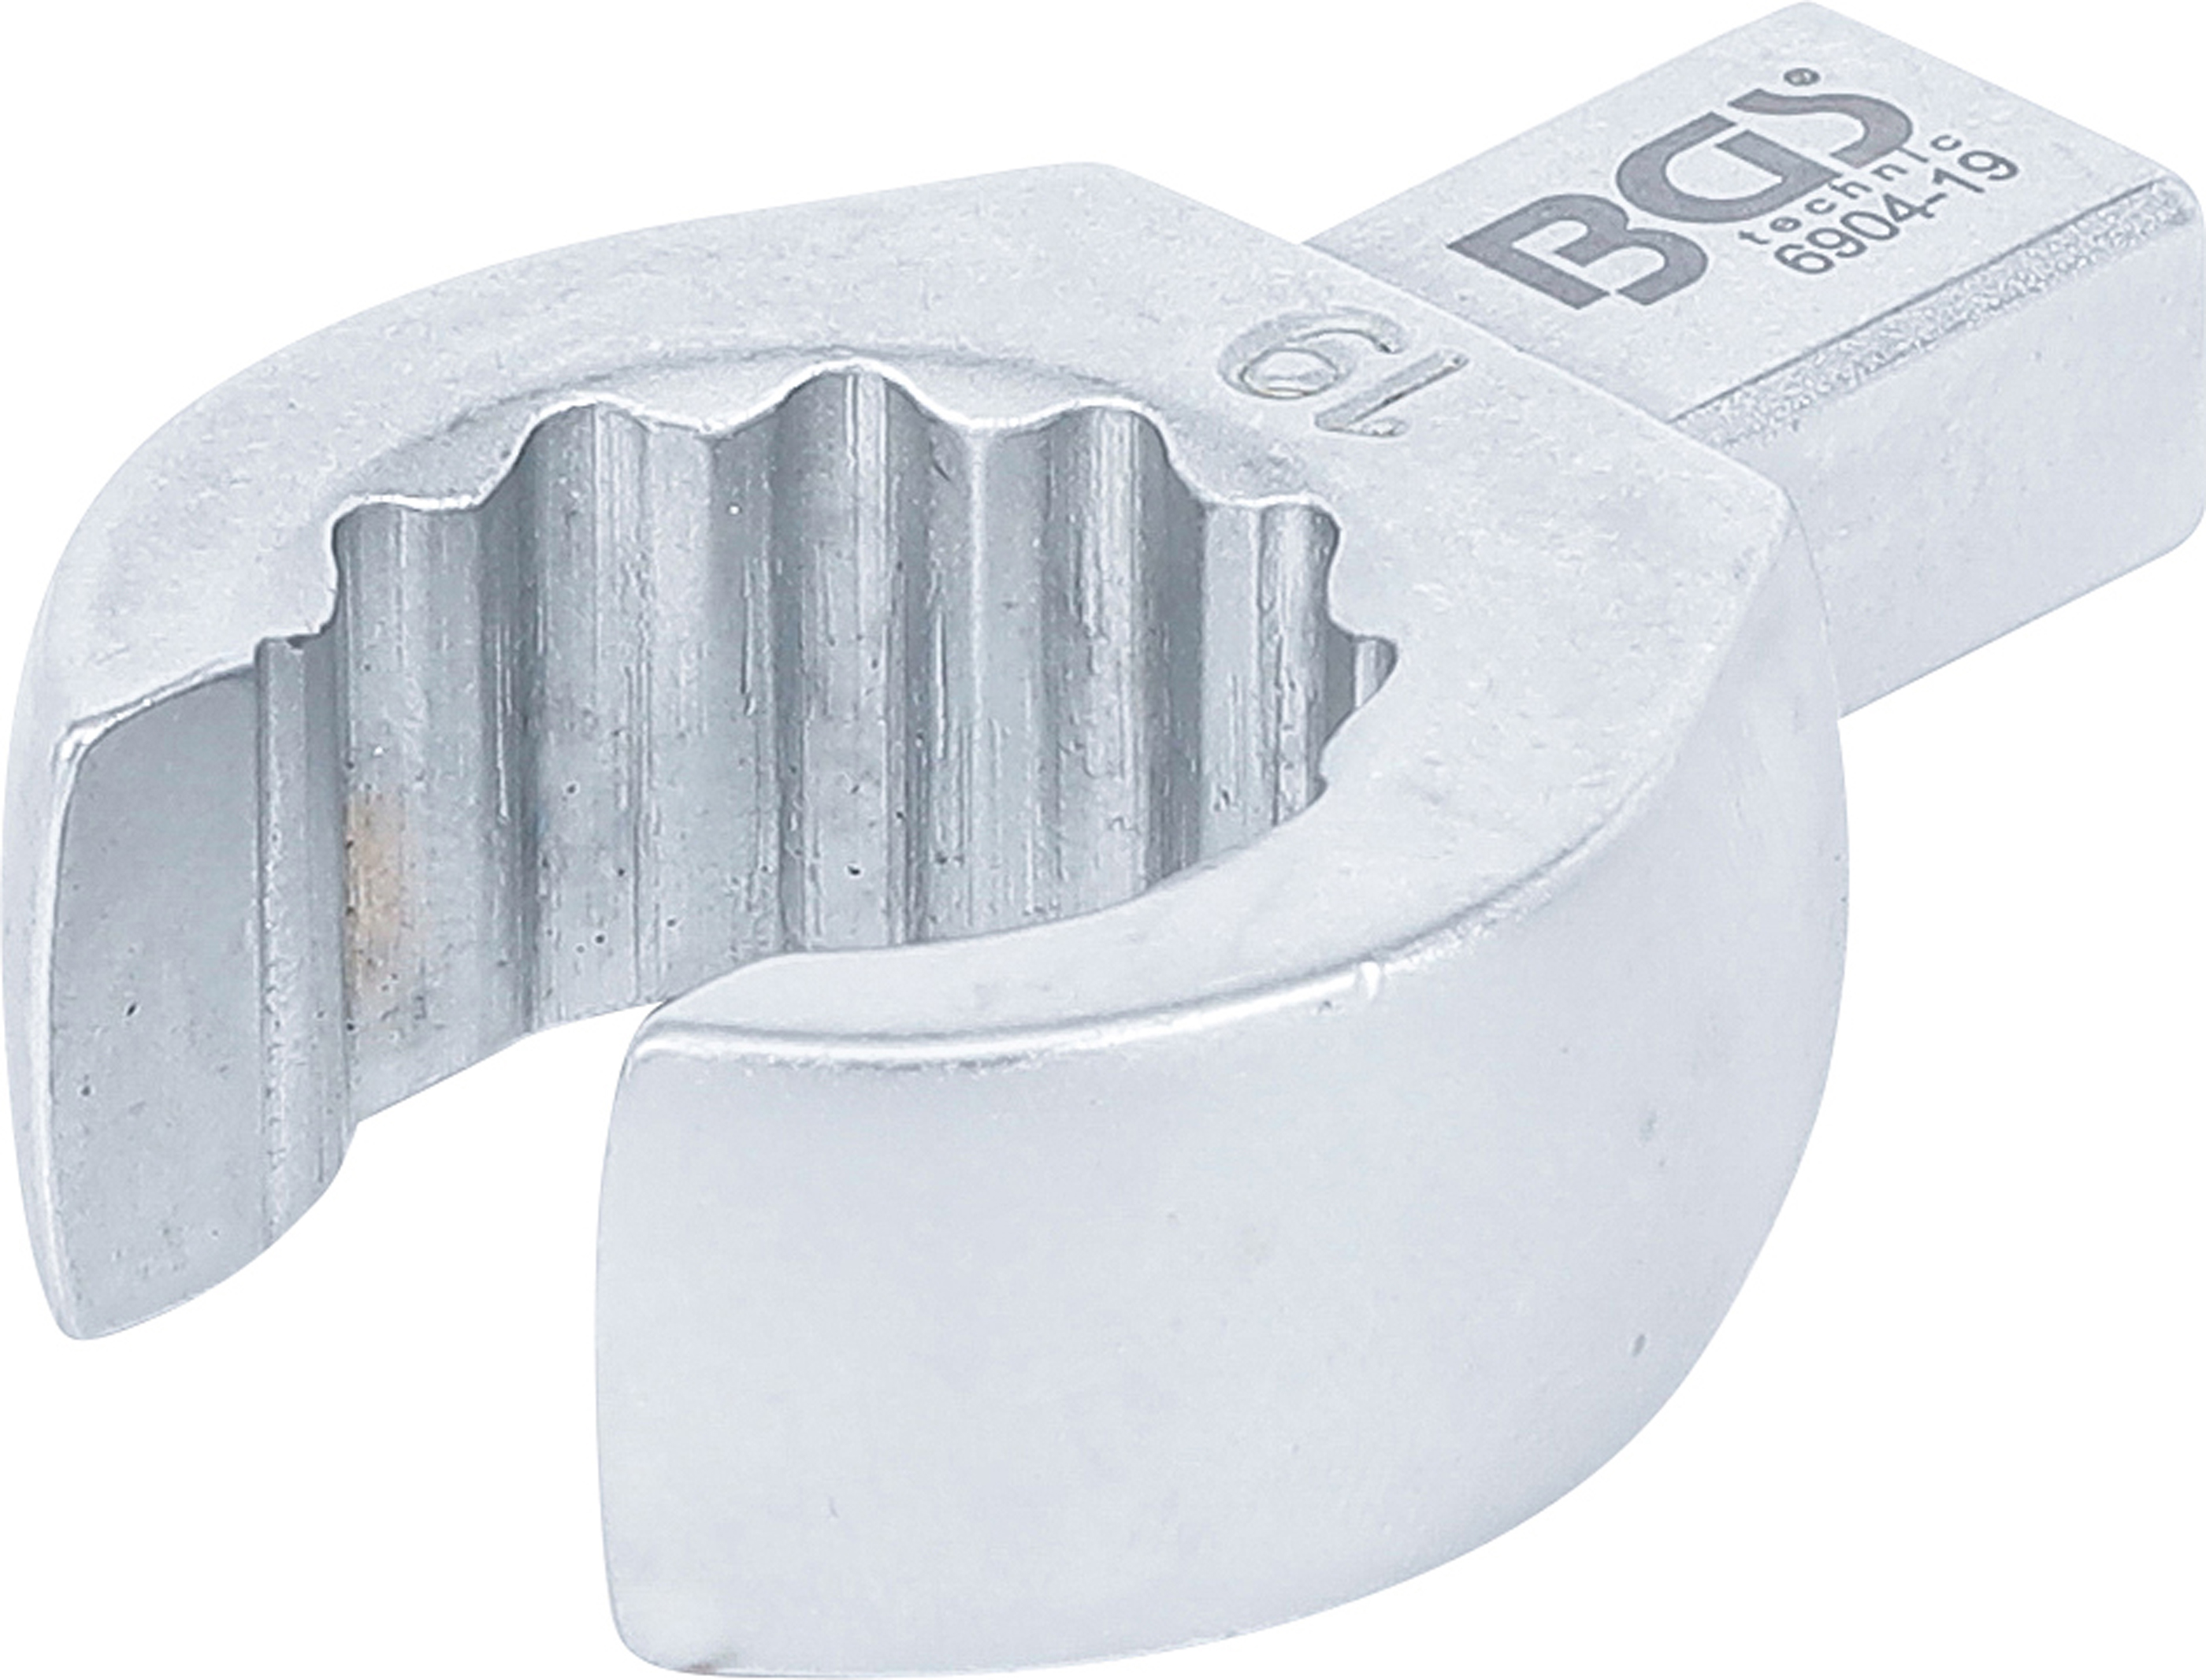 BGS Einsteck-Ringschlüssel | offen | 19 mm | Aufnahme 9 x 12 mm